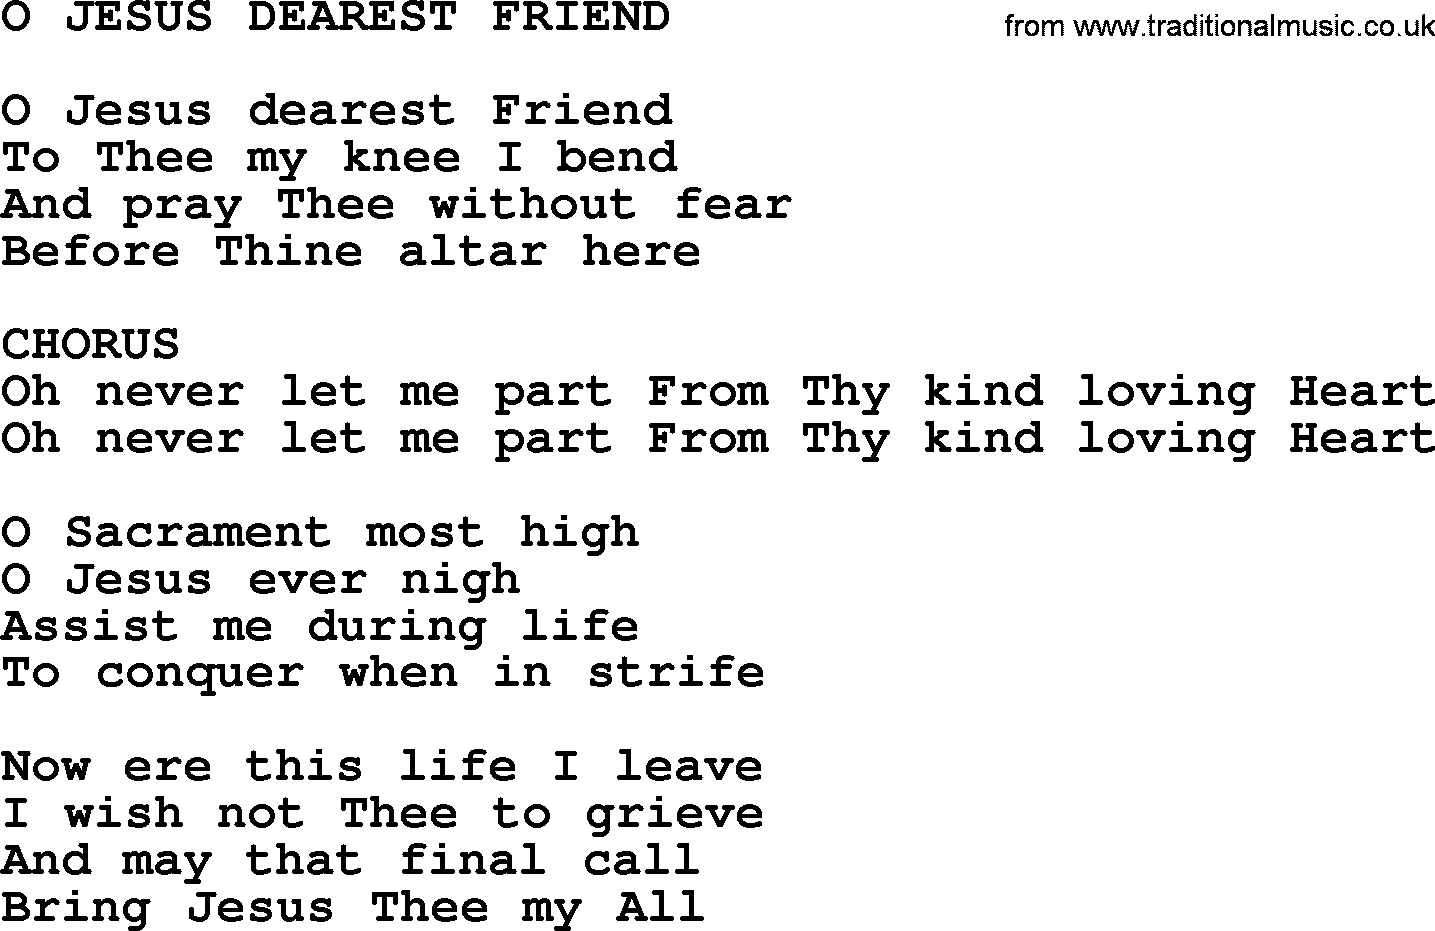 Catholic Hymn: O Jesus Dearest Friend lyrics with PDF